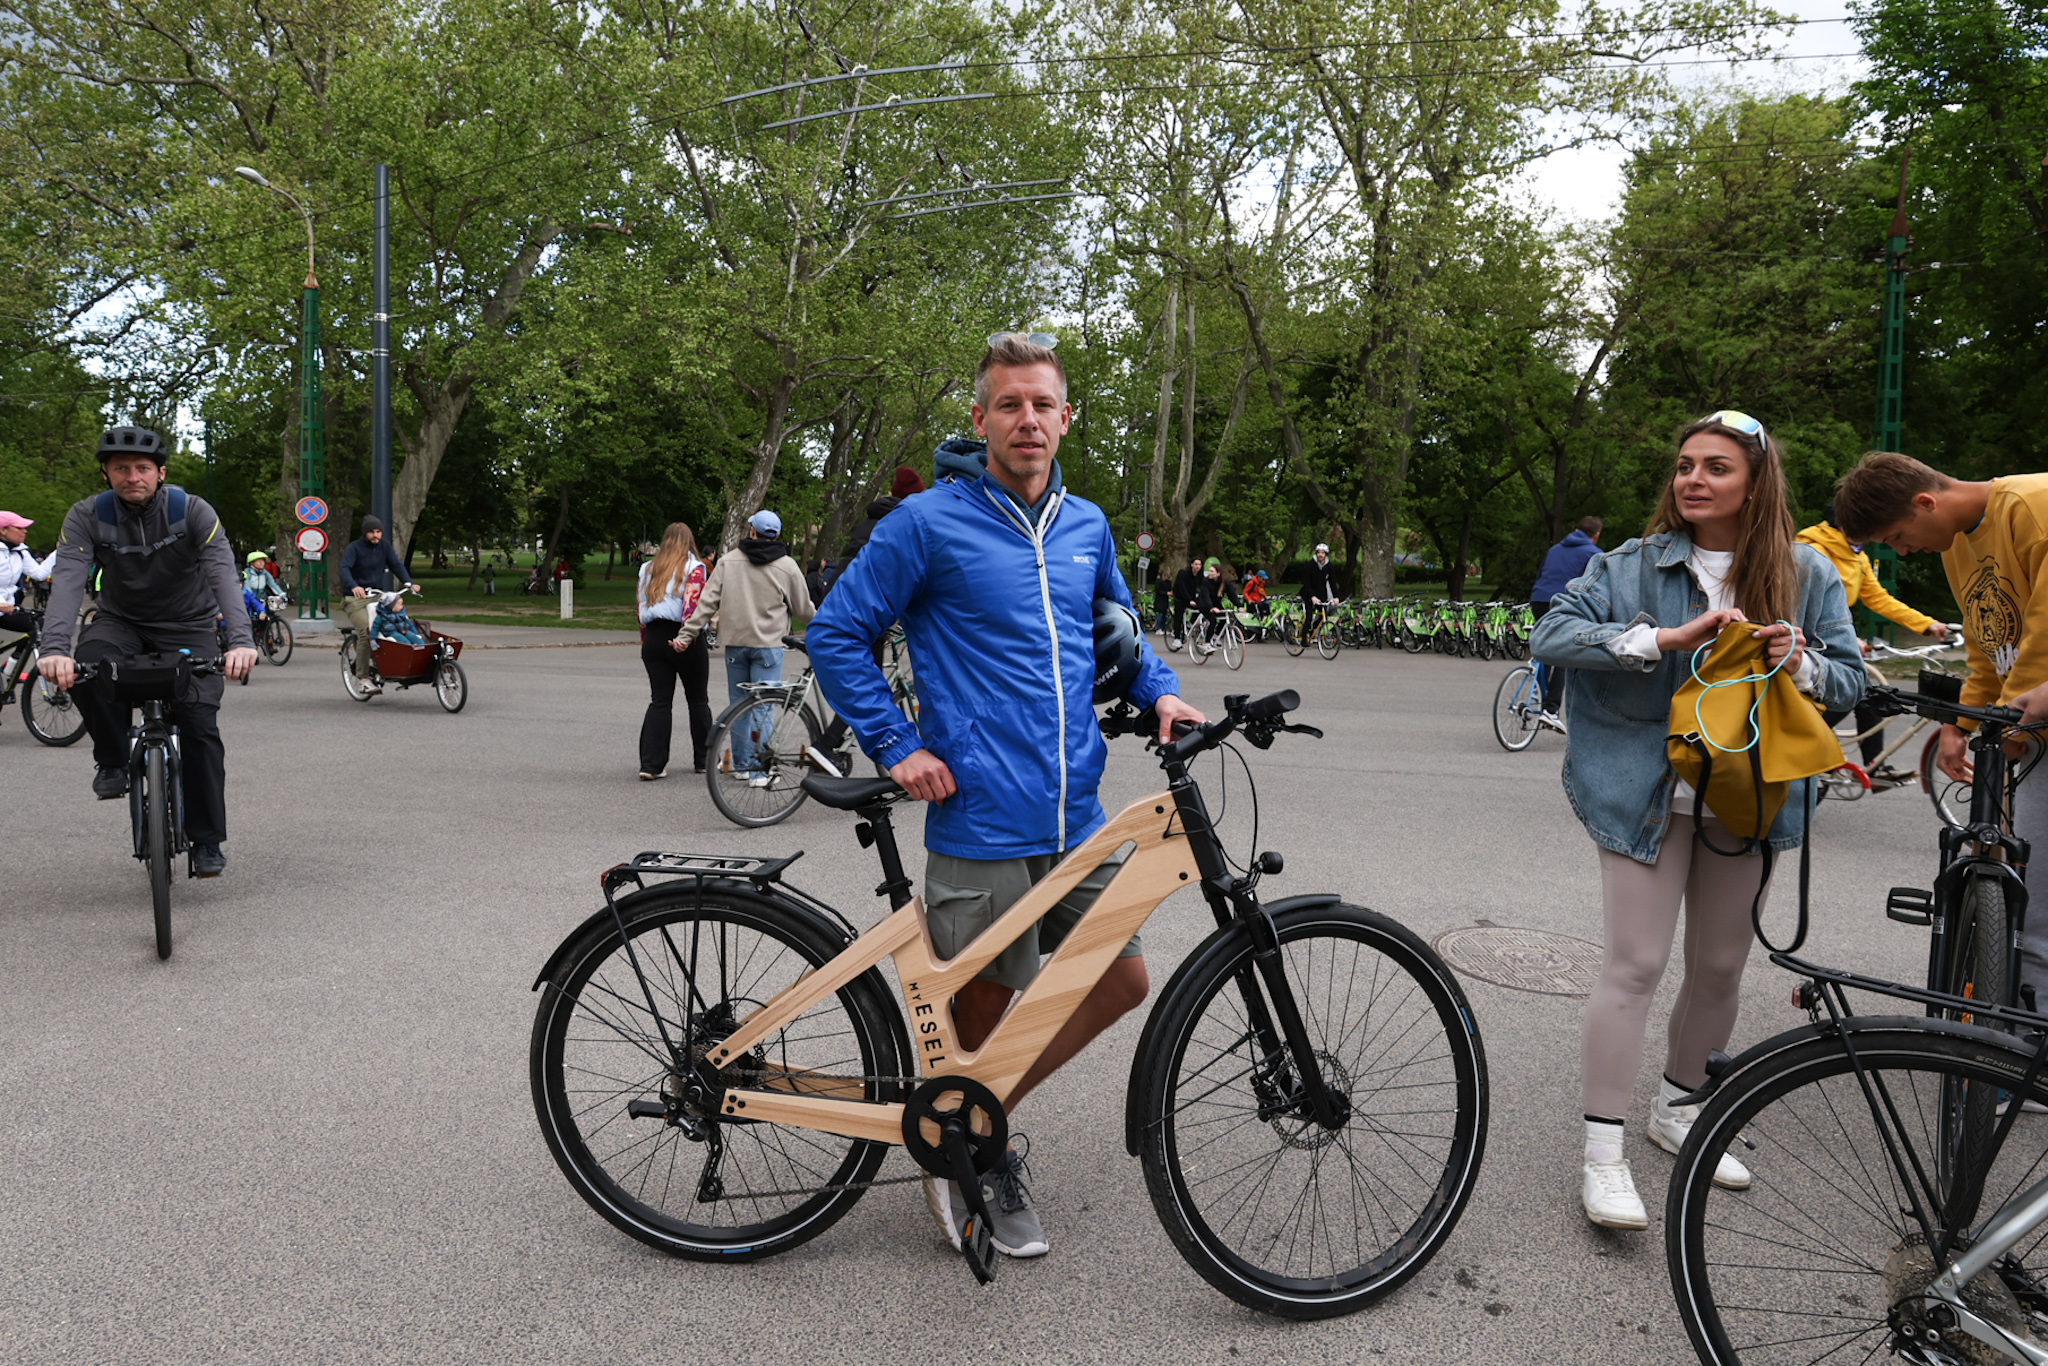 Magyar Péter is kinn tekert az I Bike Budapesten – fotósunknak meg is állt egy kis időre